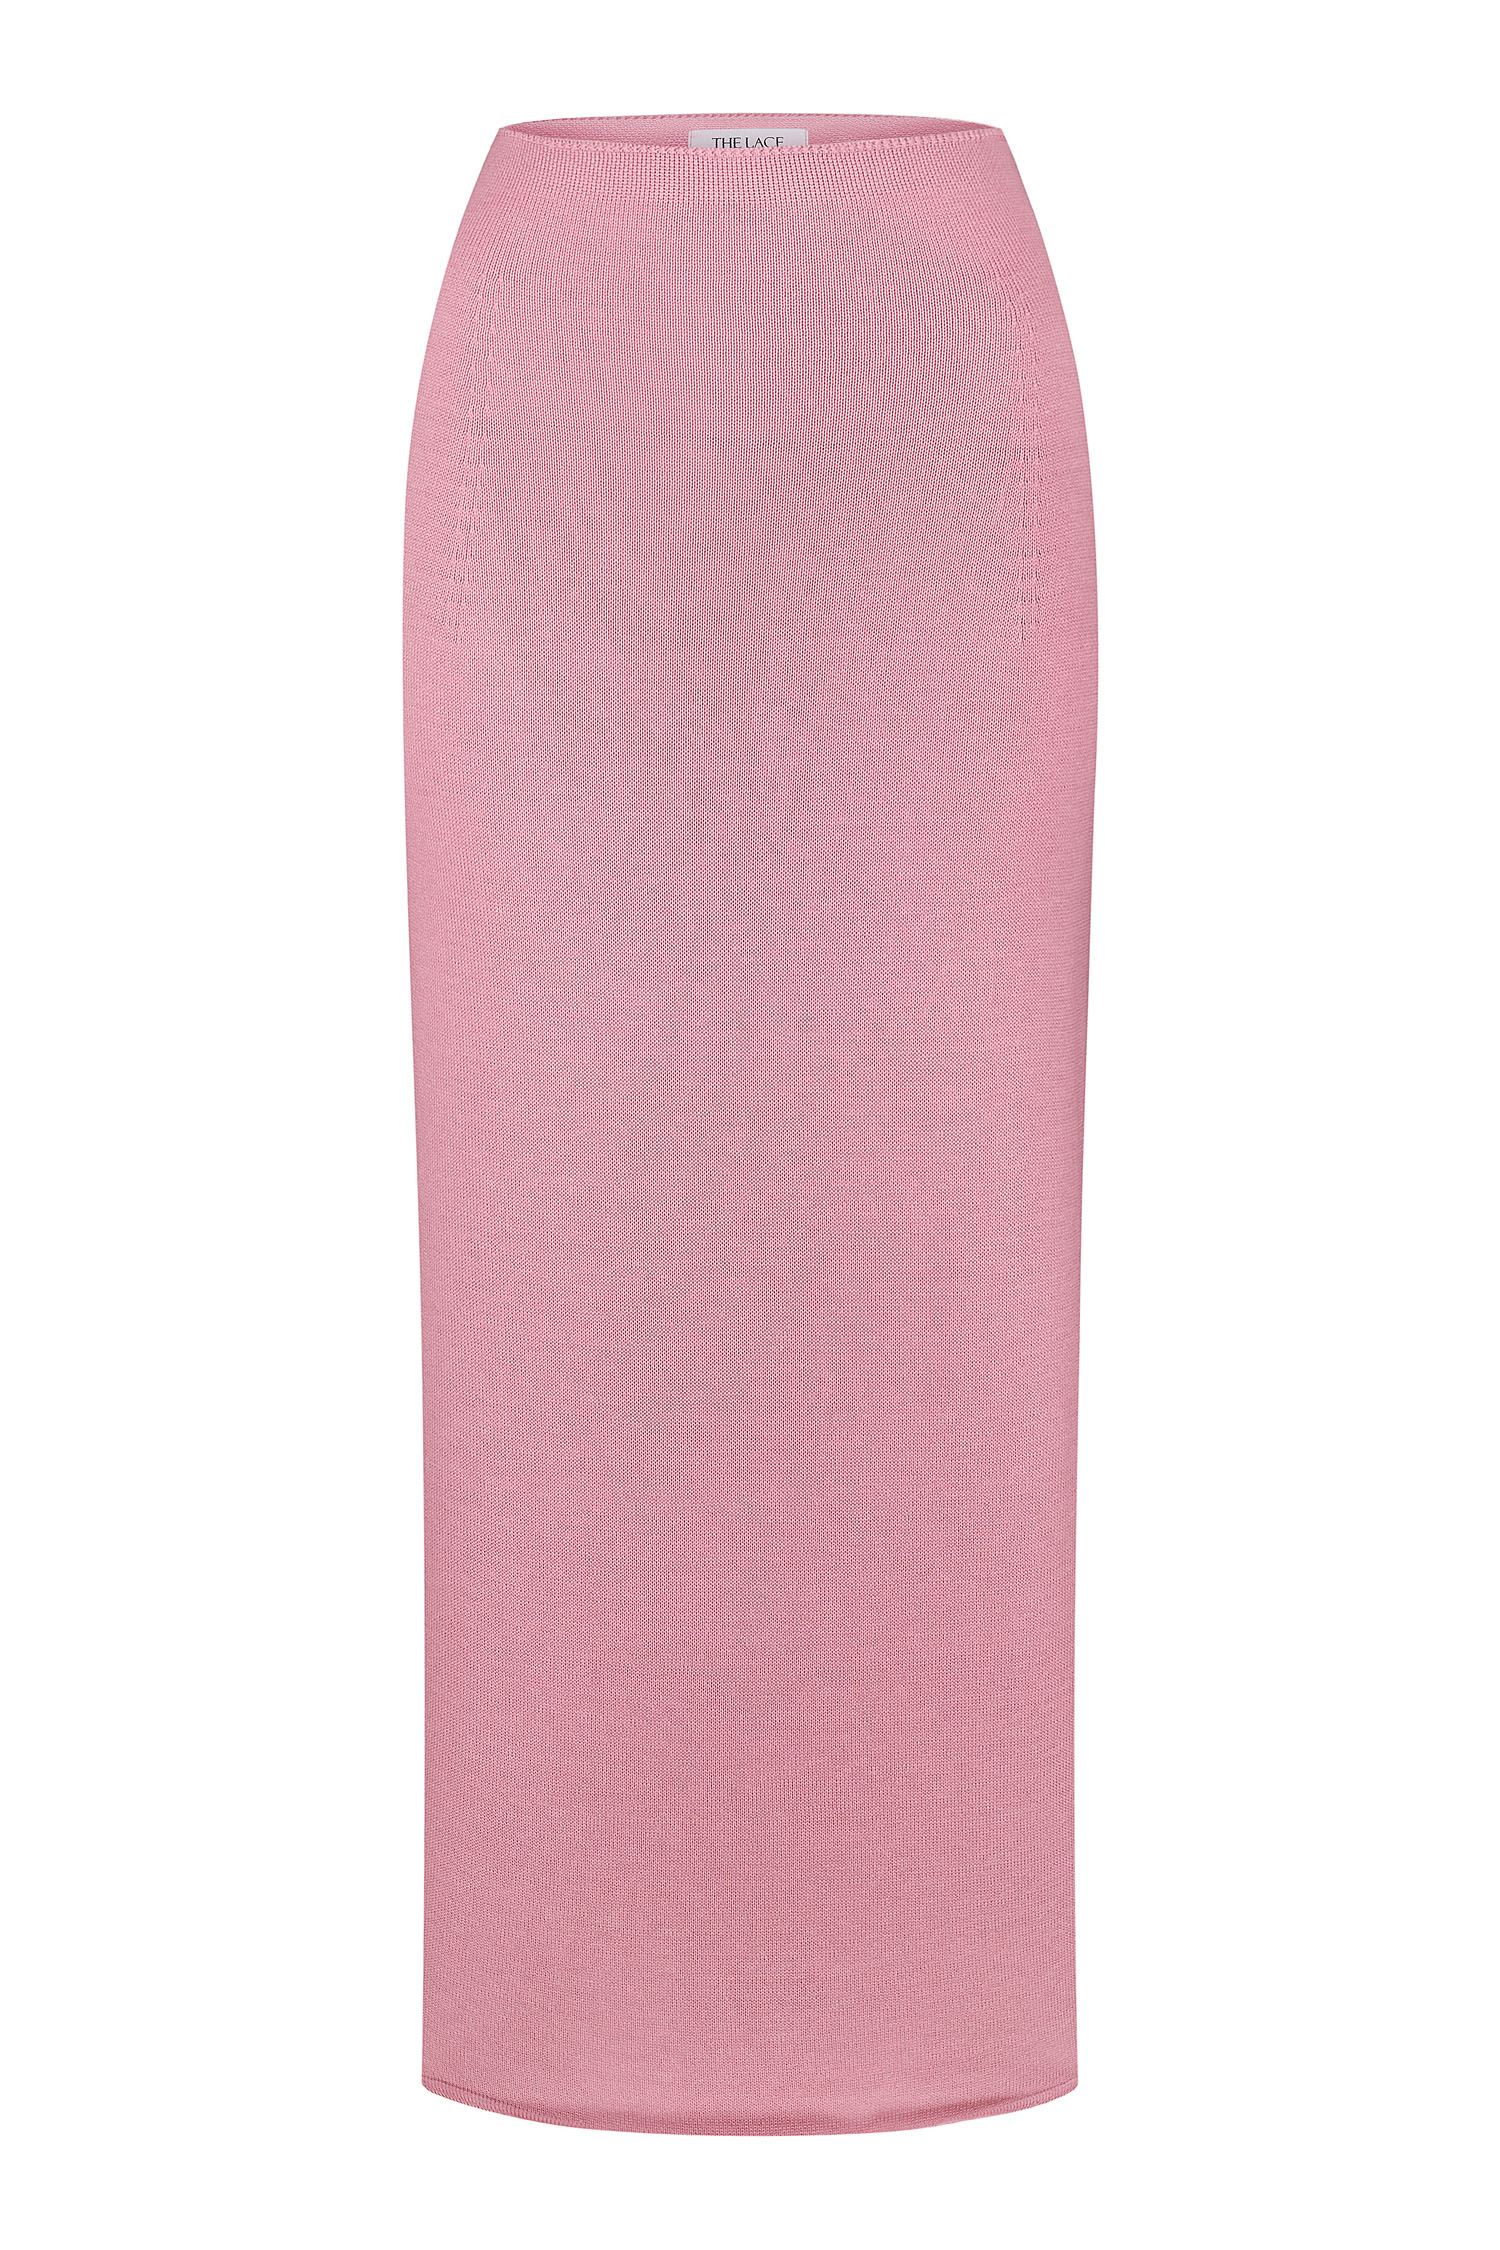 Трикотажна спідниця з низькою талією рожева - THE LACE фото 138230